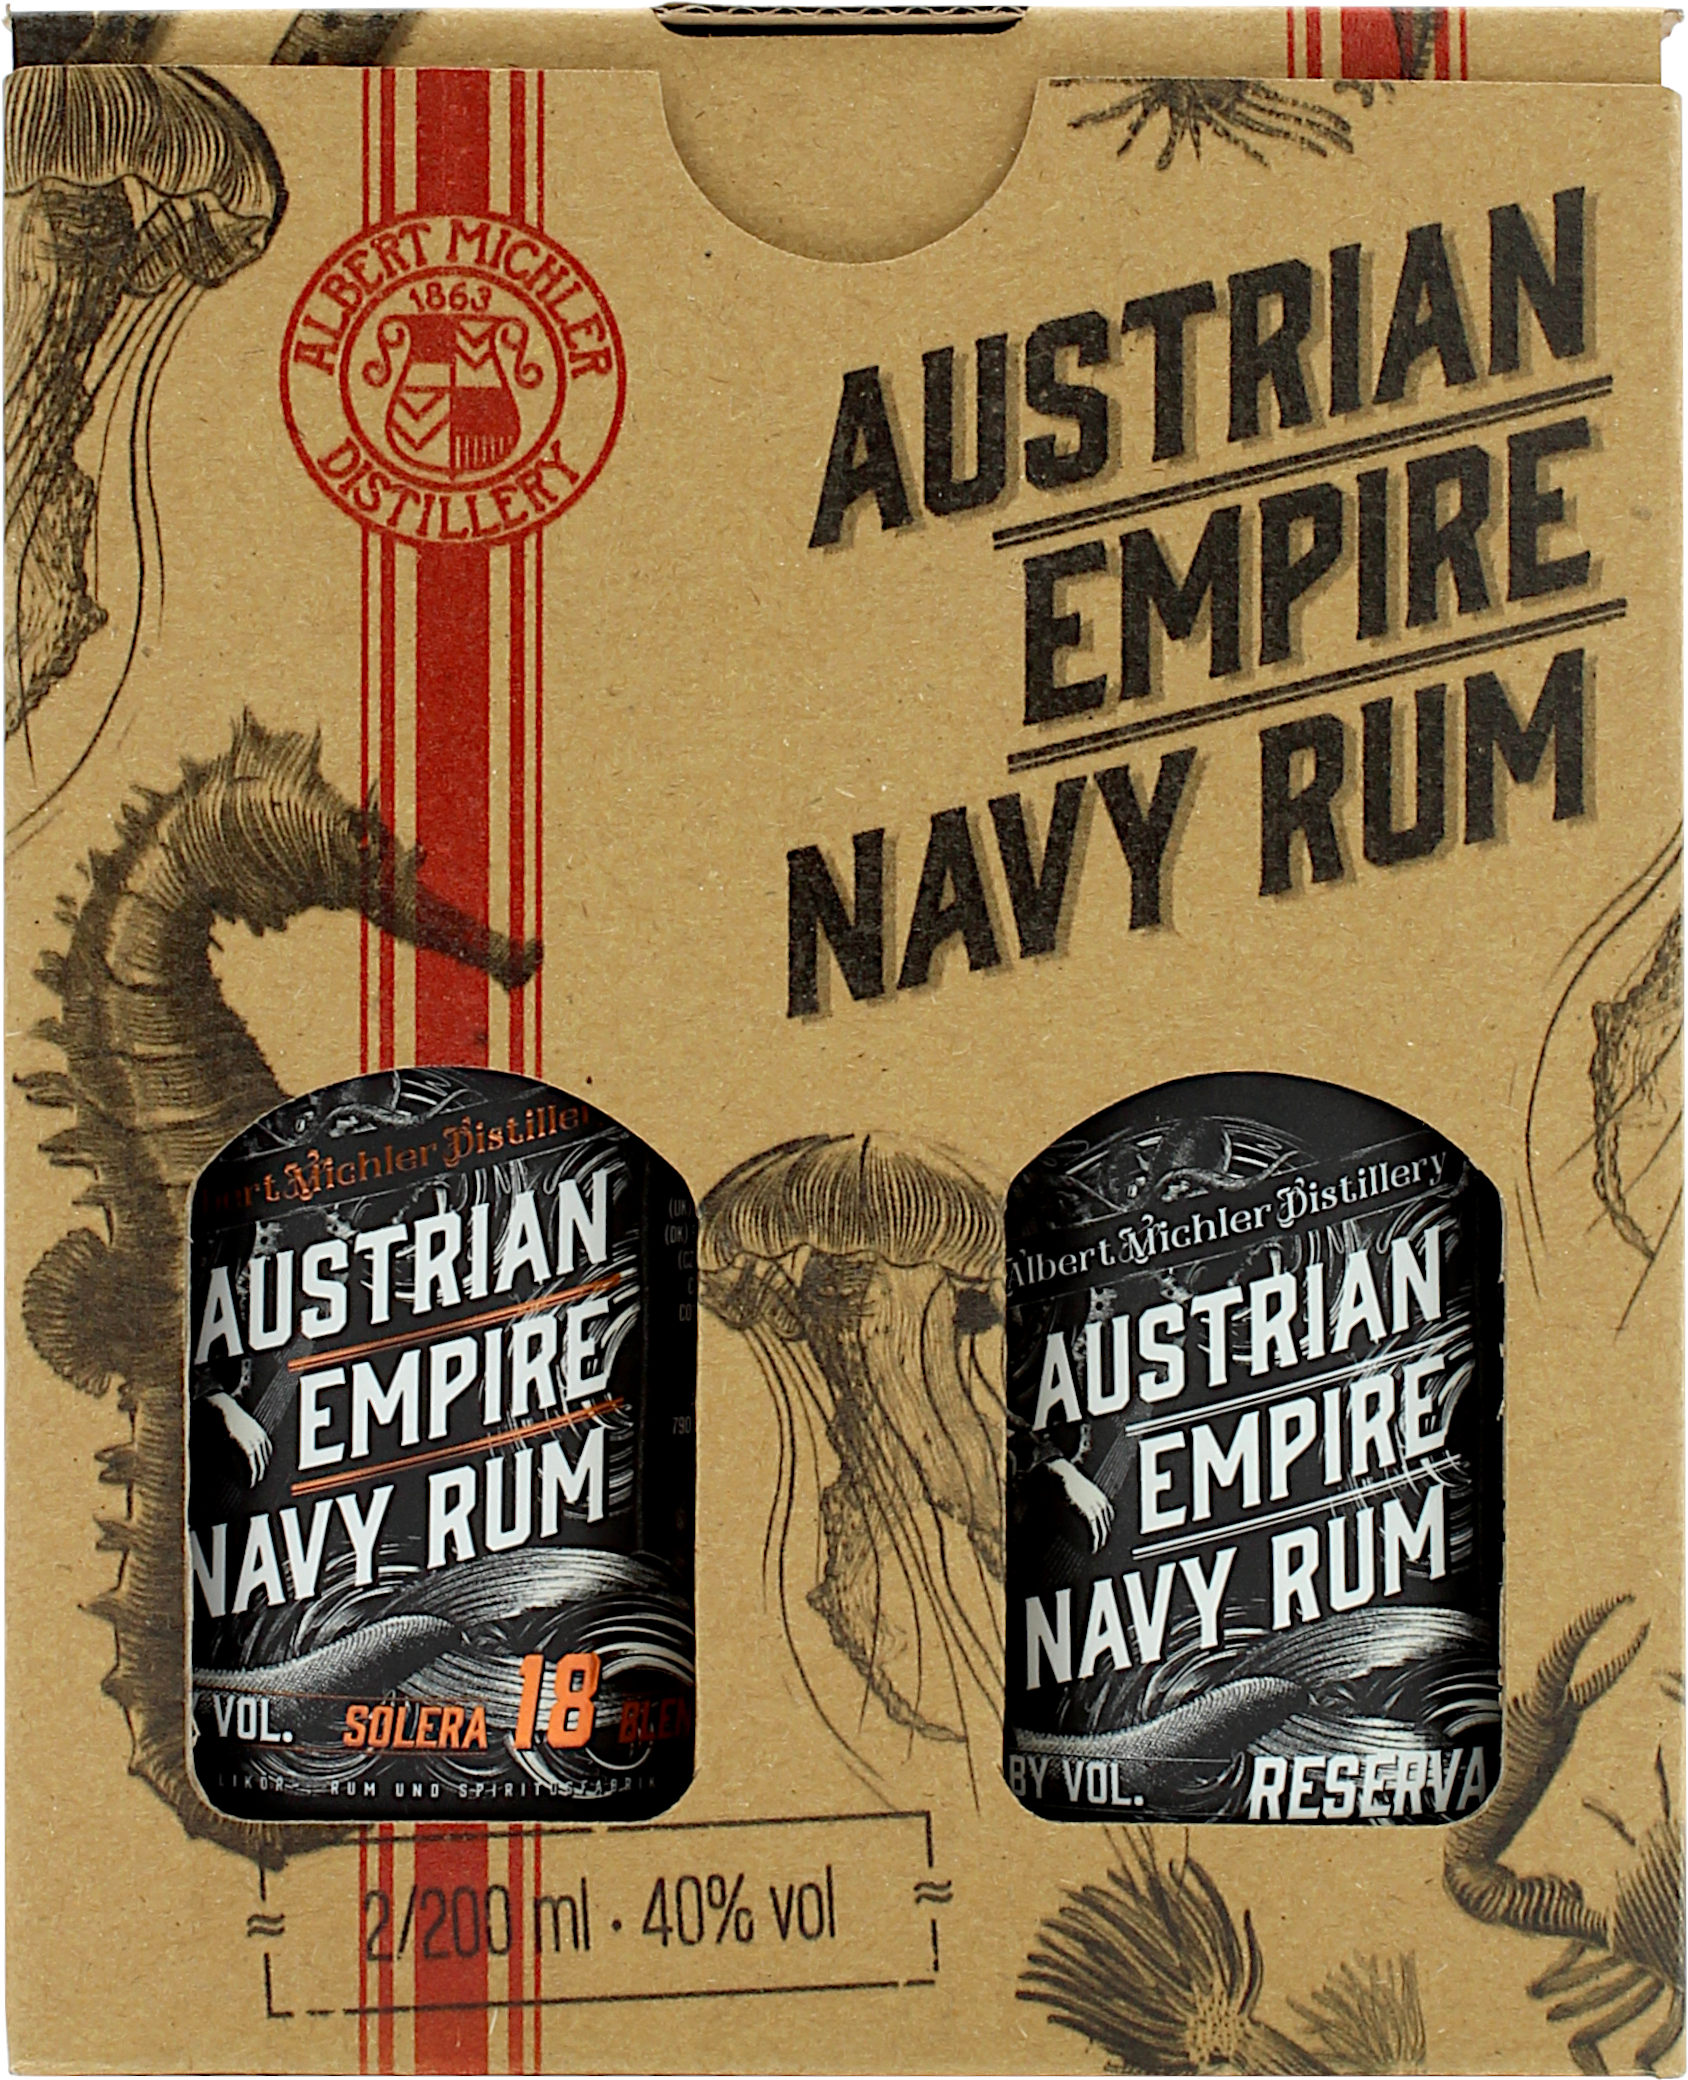 Austrian Empire Navy Rum Reserva 1863 + Solera 18 Jahre 40.0% 2x200ml